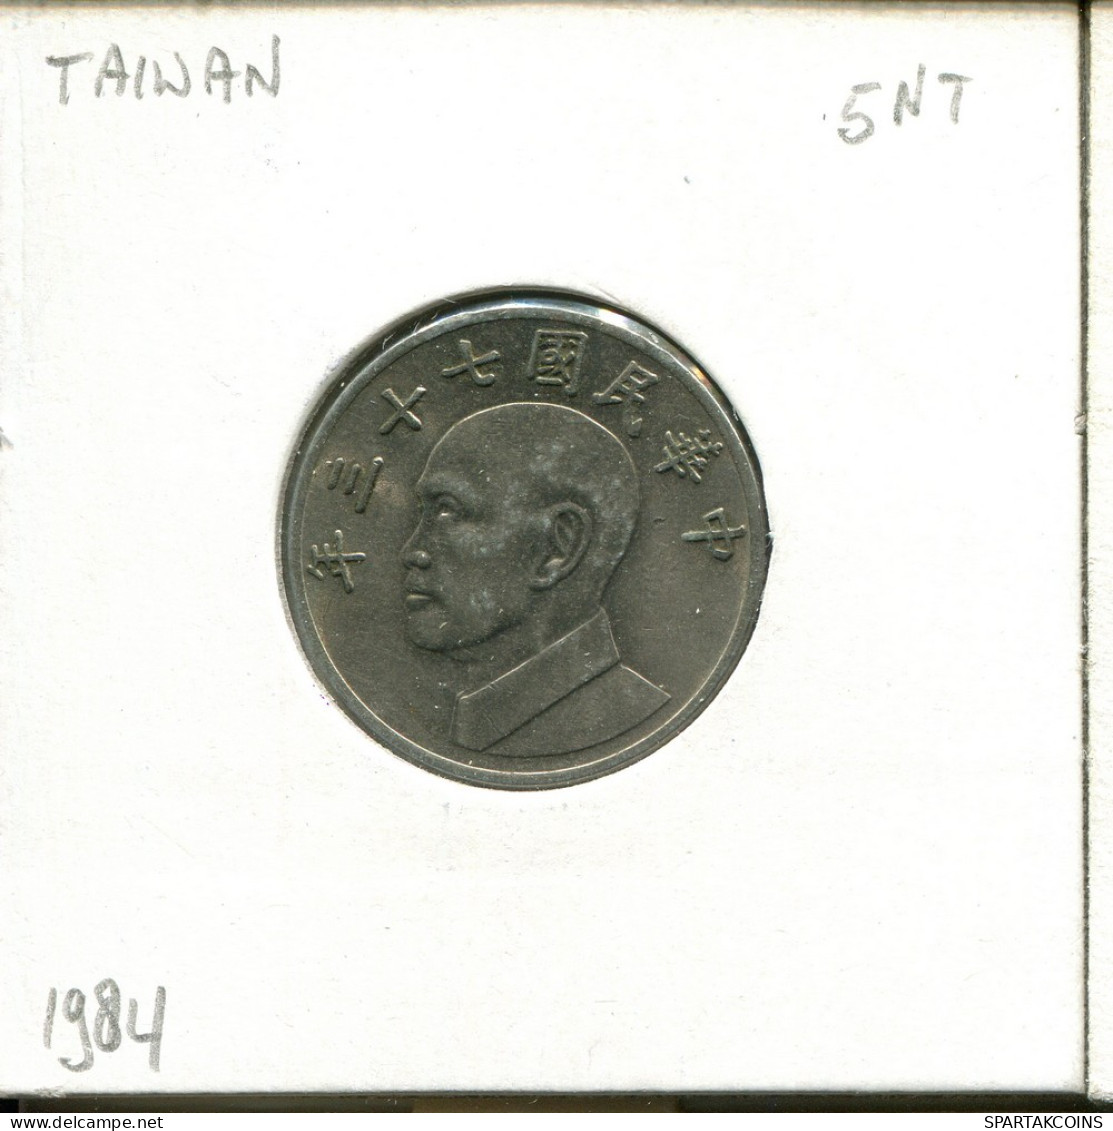 5 YUAN 1984 TAIWÁN TAIWAN Moneda #AT960.E - Taiwan